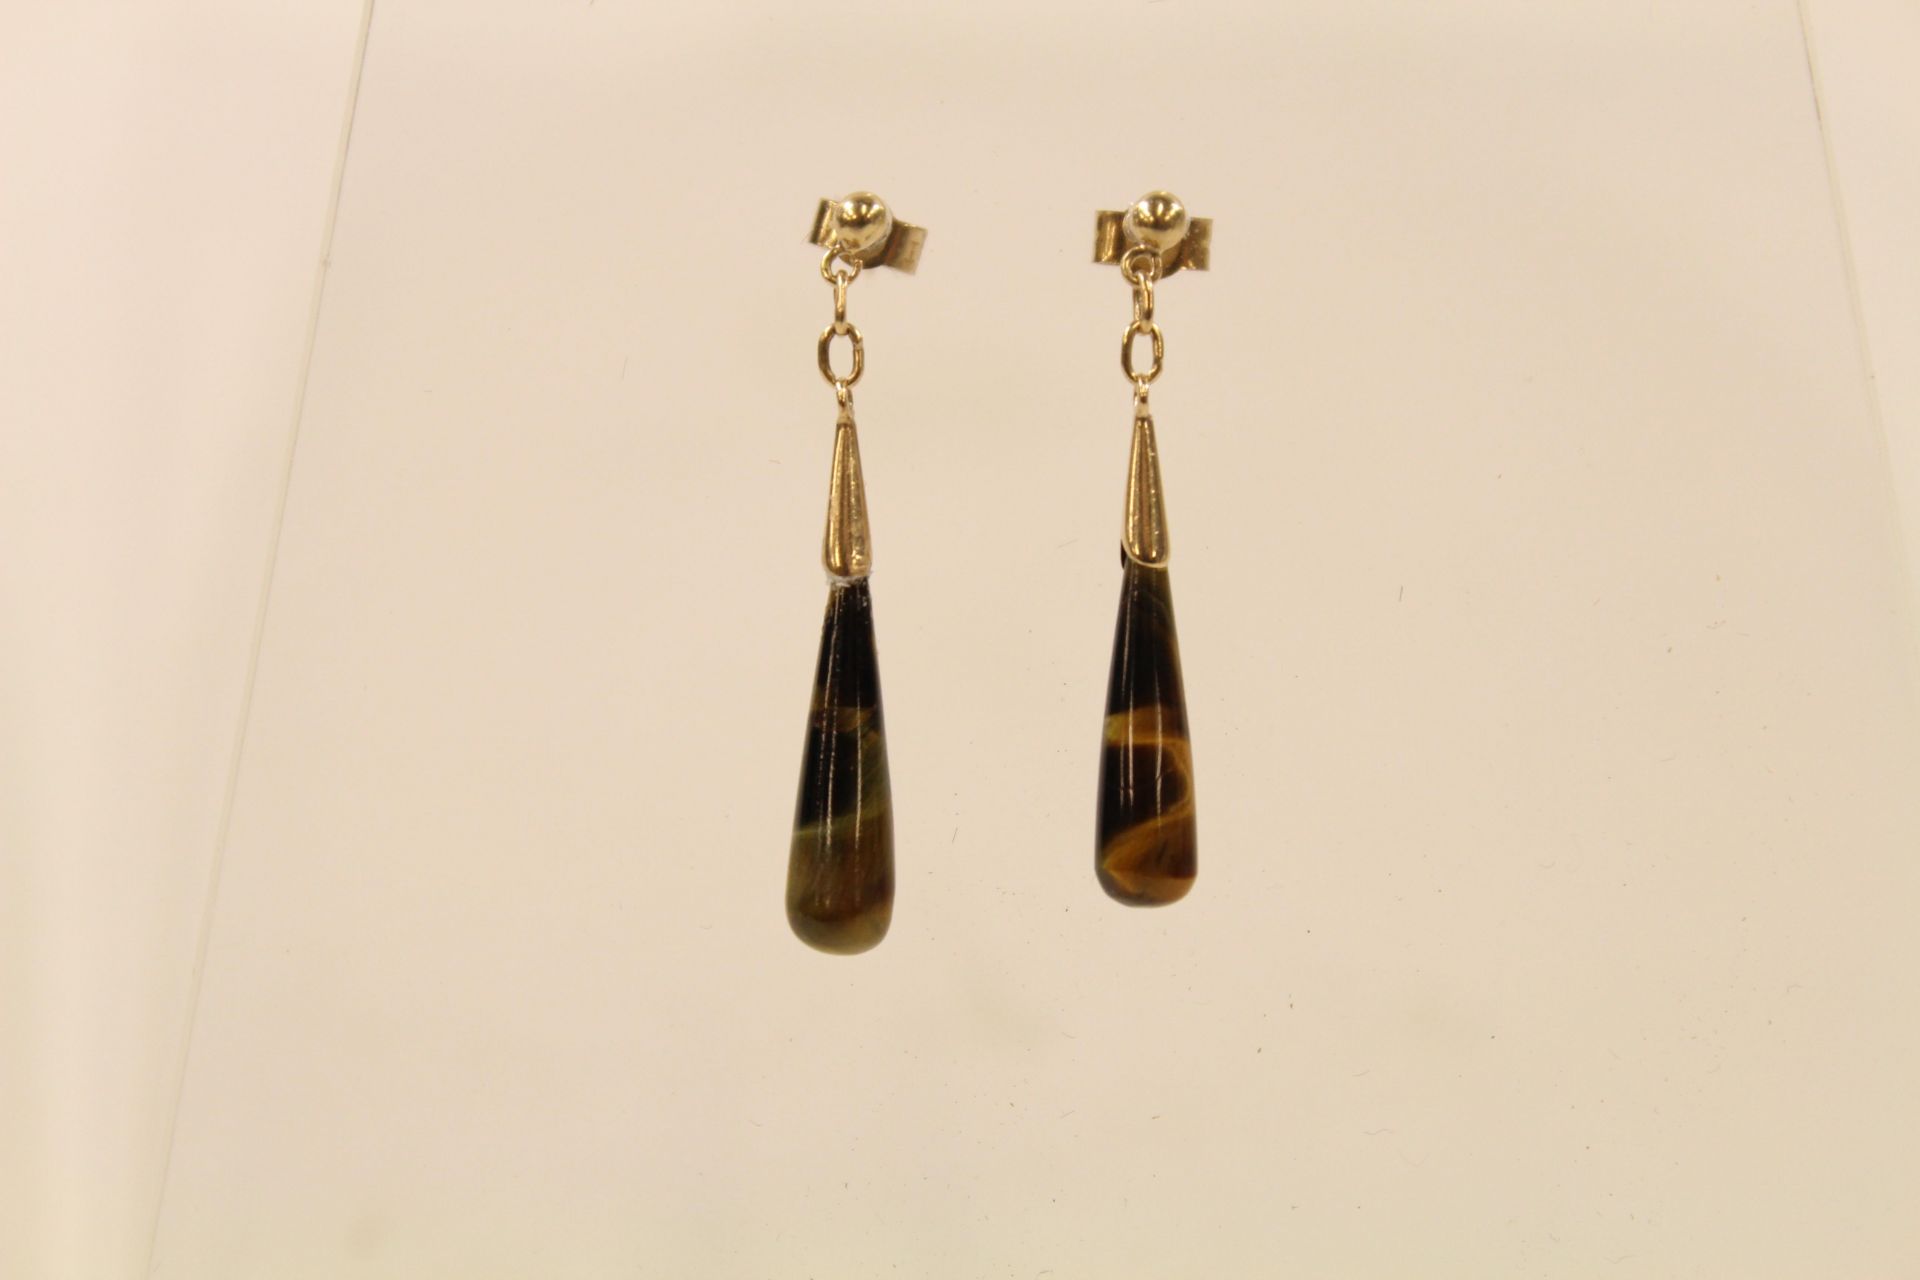 Pair of 9ct gold Tigers Eye drop earrings (est £20-£30)